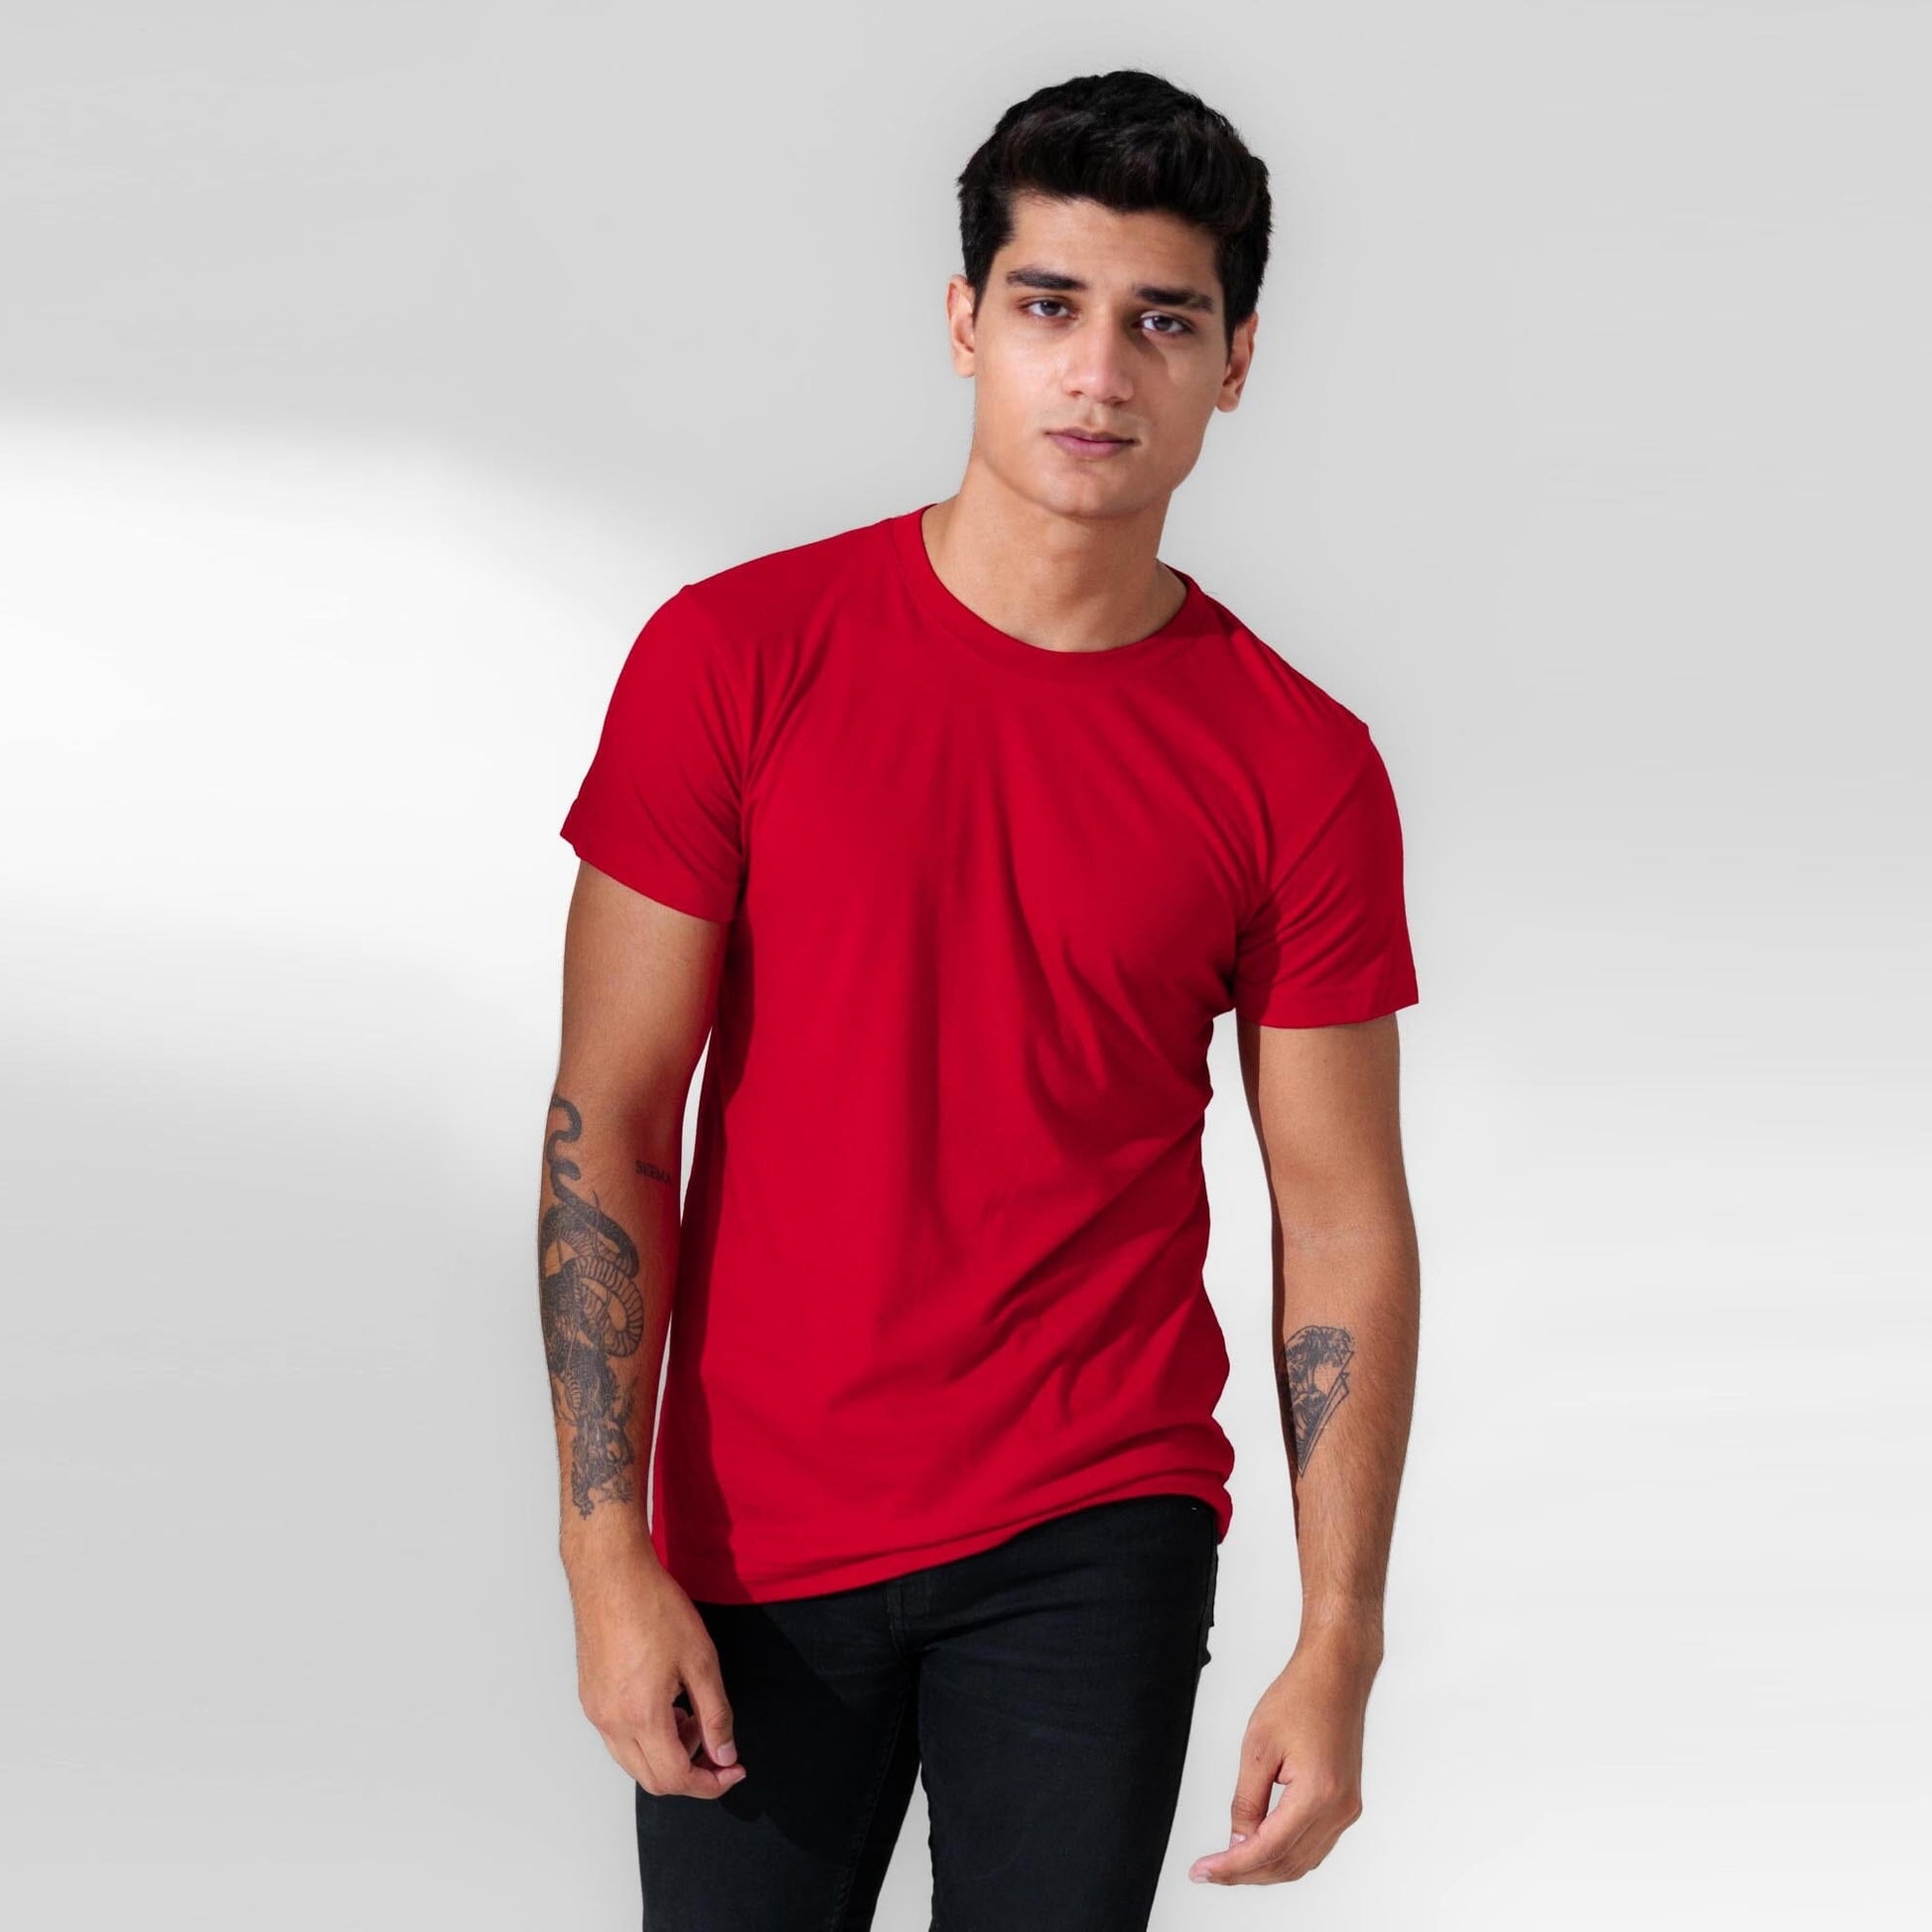 Polo Republica Men's Essentials Combed Cotton Short Sleeve Tee Shirt Men's Tee Shirt Polo Republica Red S 